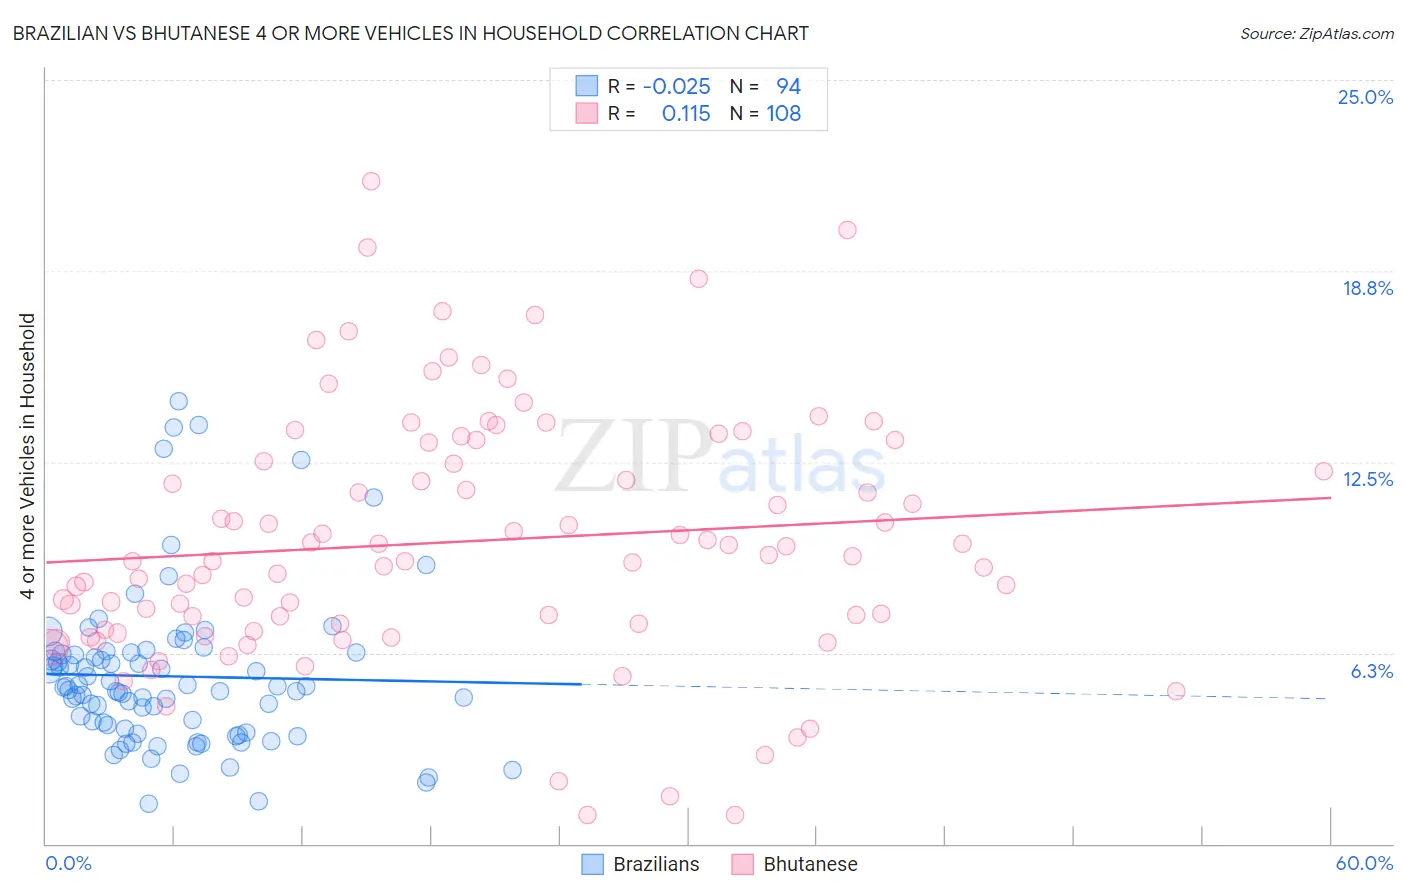 Brazilian vs Bhutanese 4 or more Vehicles in Household